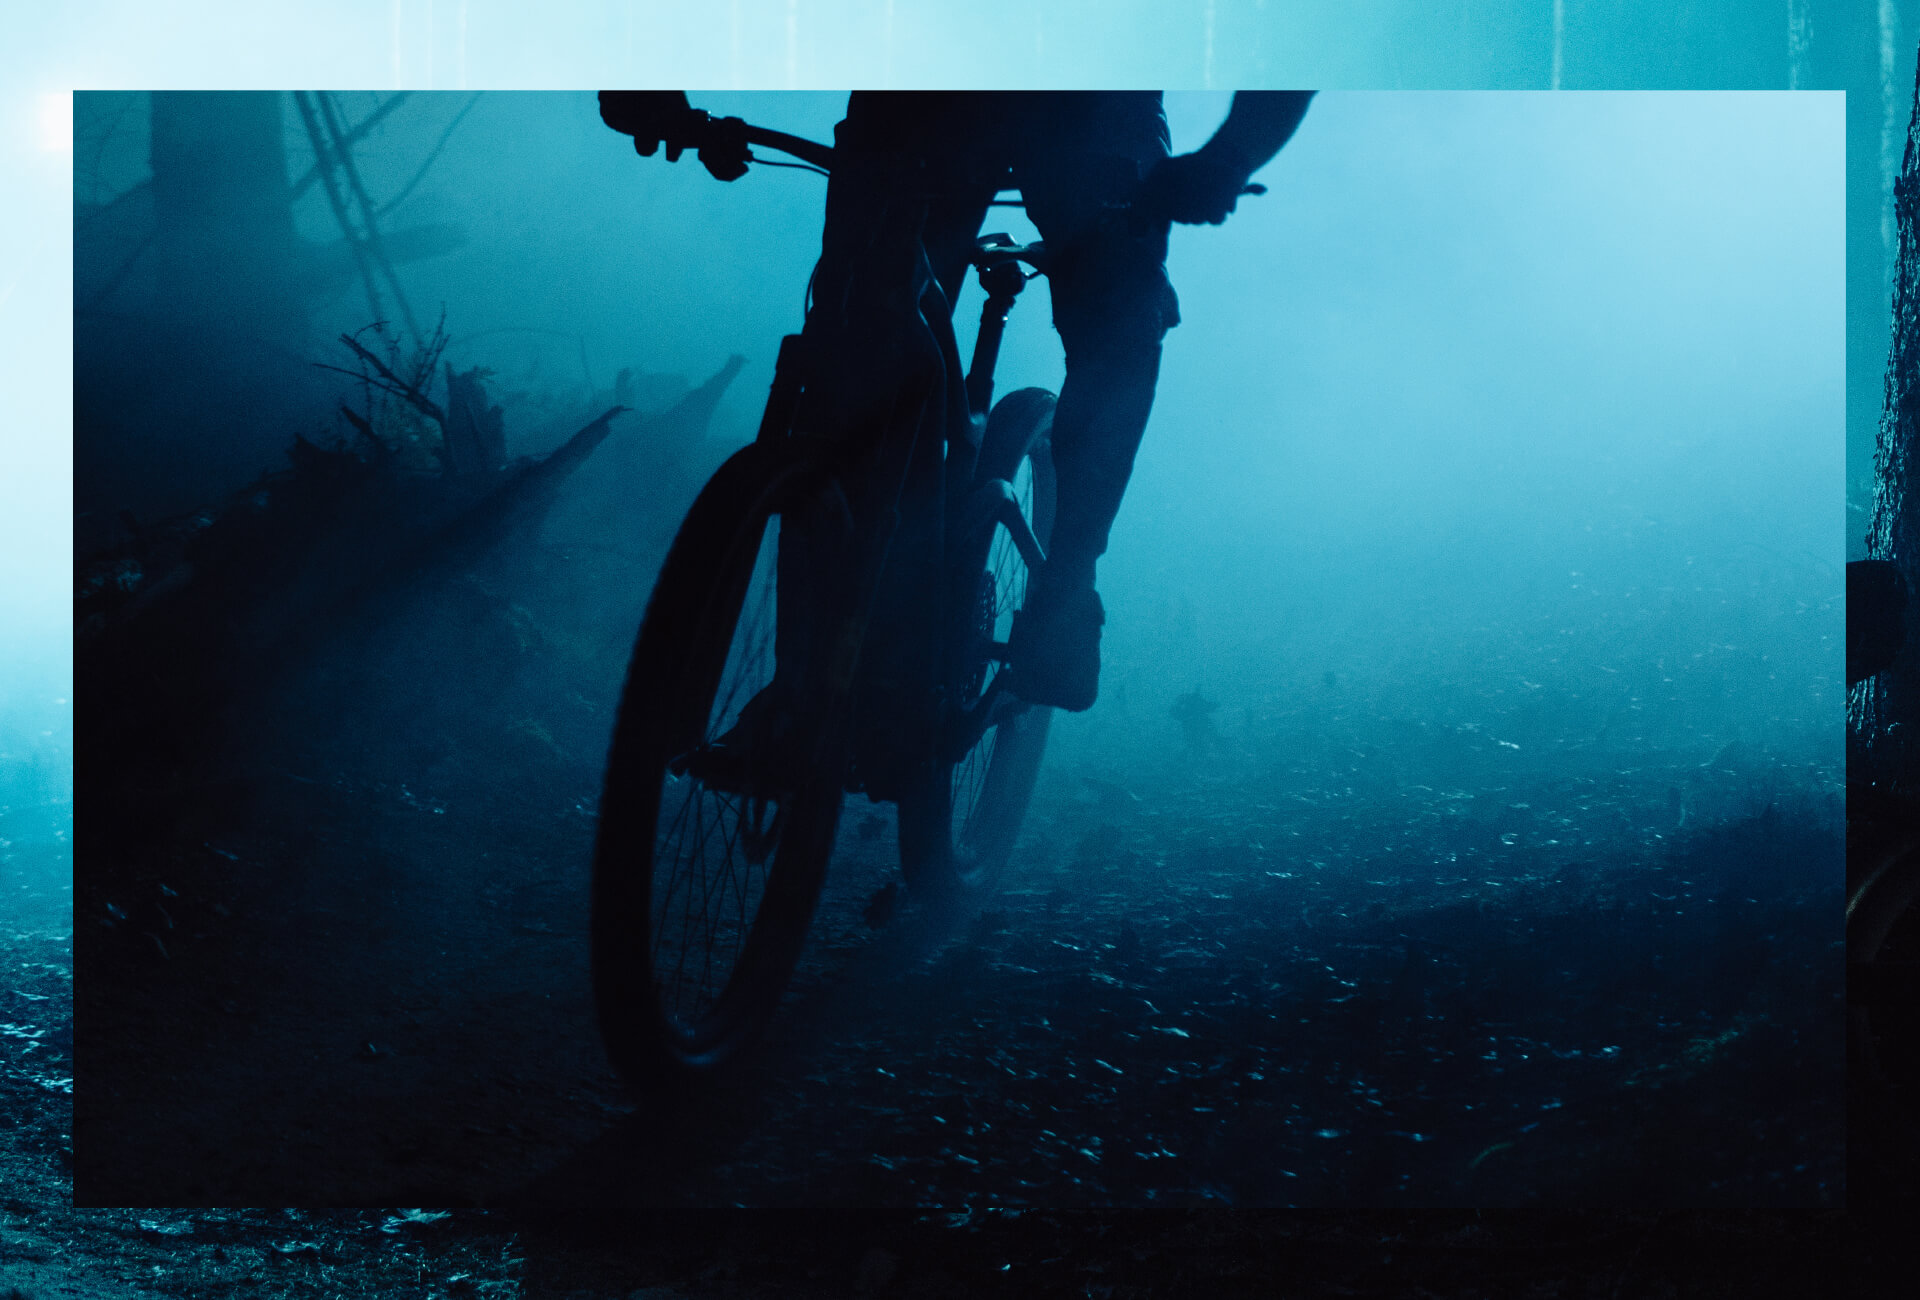 Mann fährt Mountainbike im dunklen Wald mit blauen Lichtern im HIntergrund